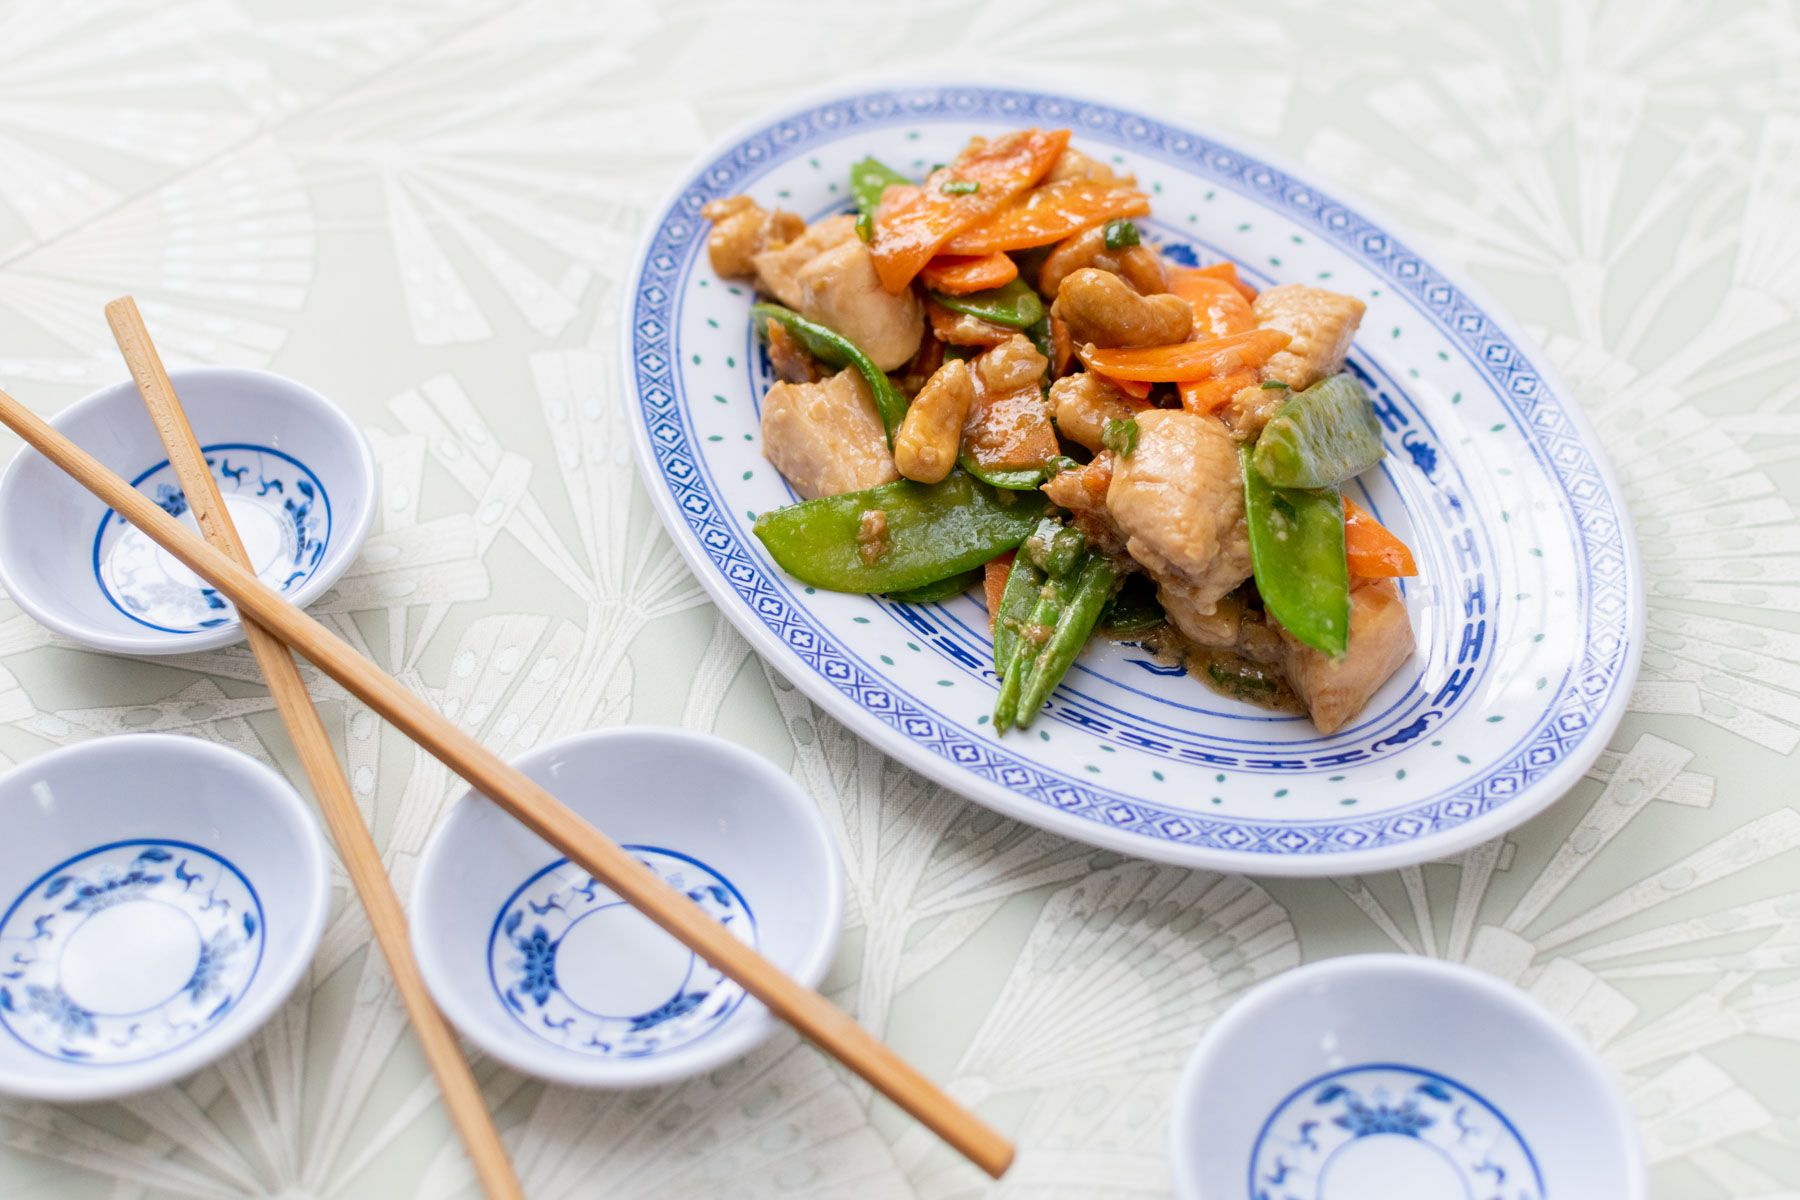 plat de poulet sauté au wok réalisé grâce au cours de cuisine chinoise d'Artesane